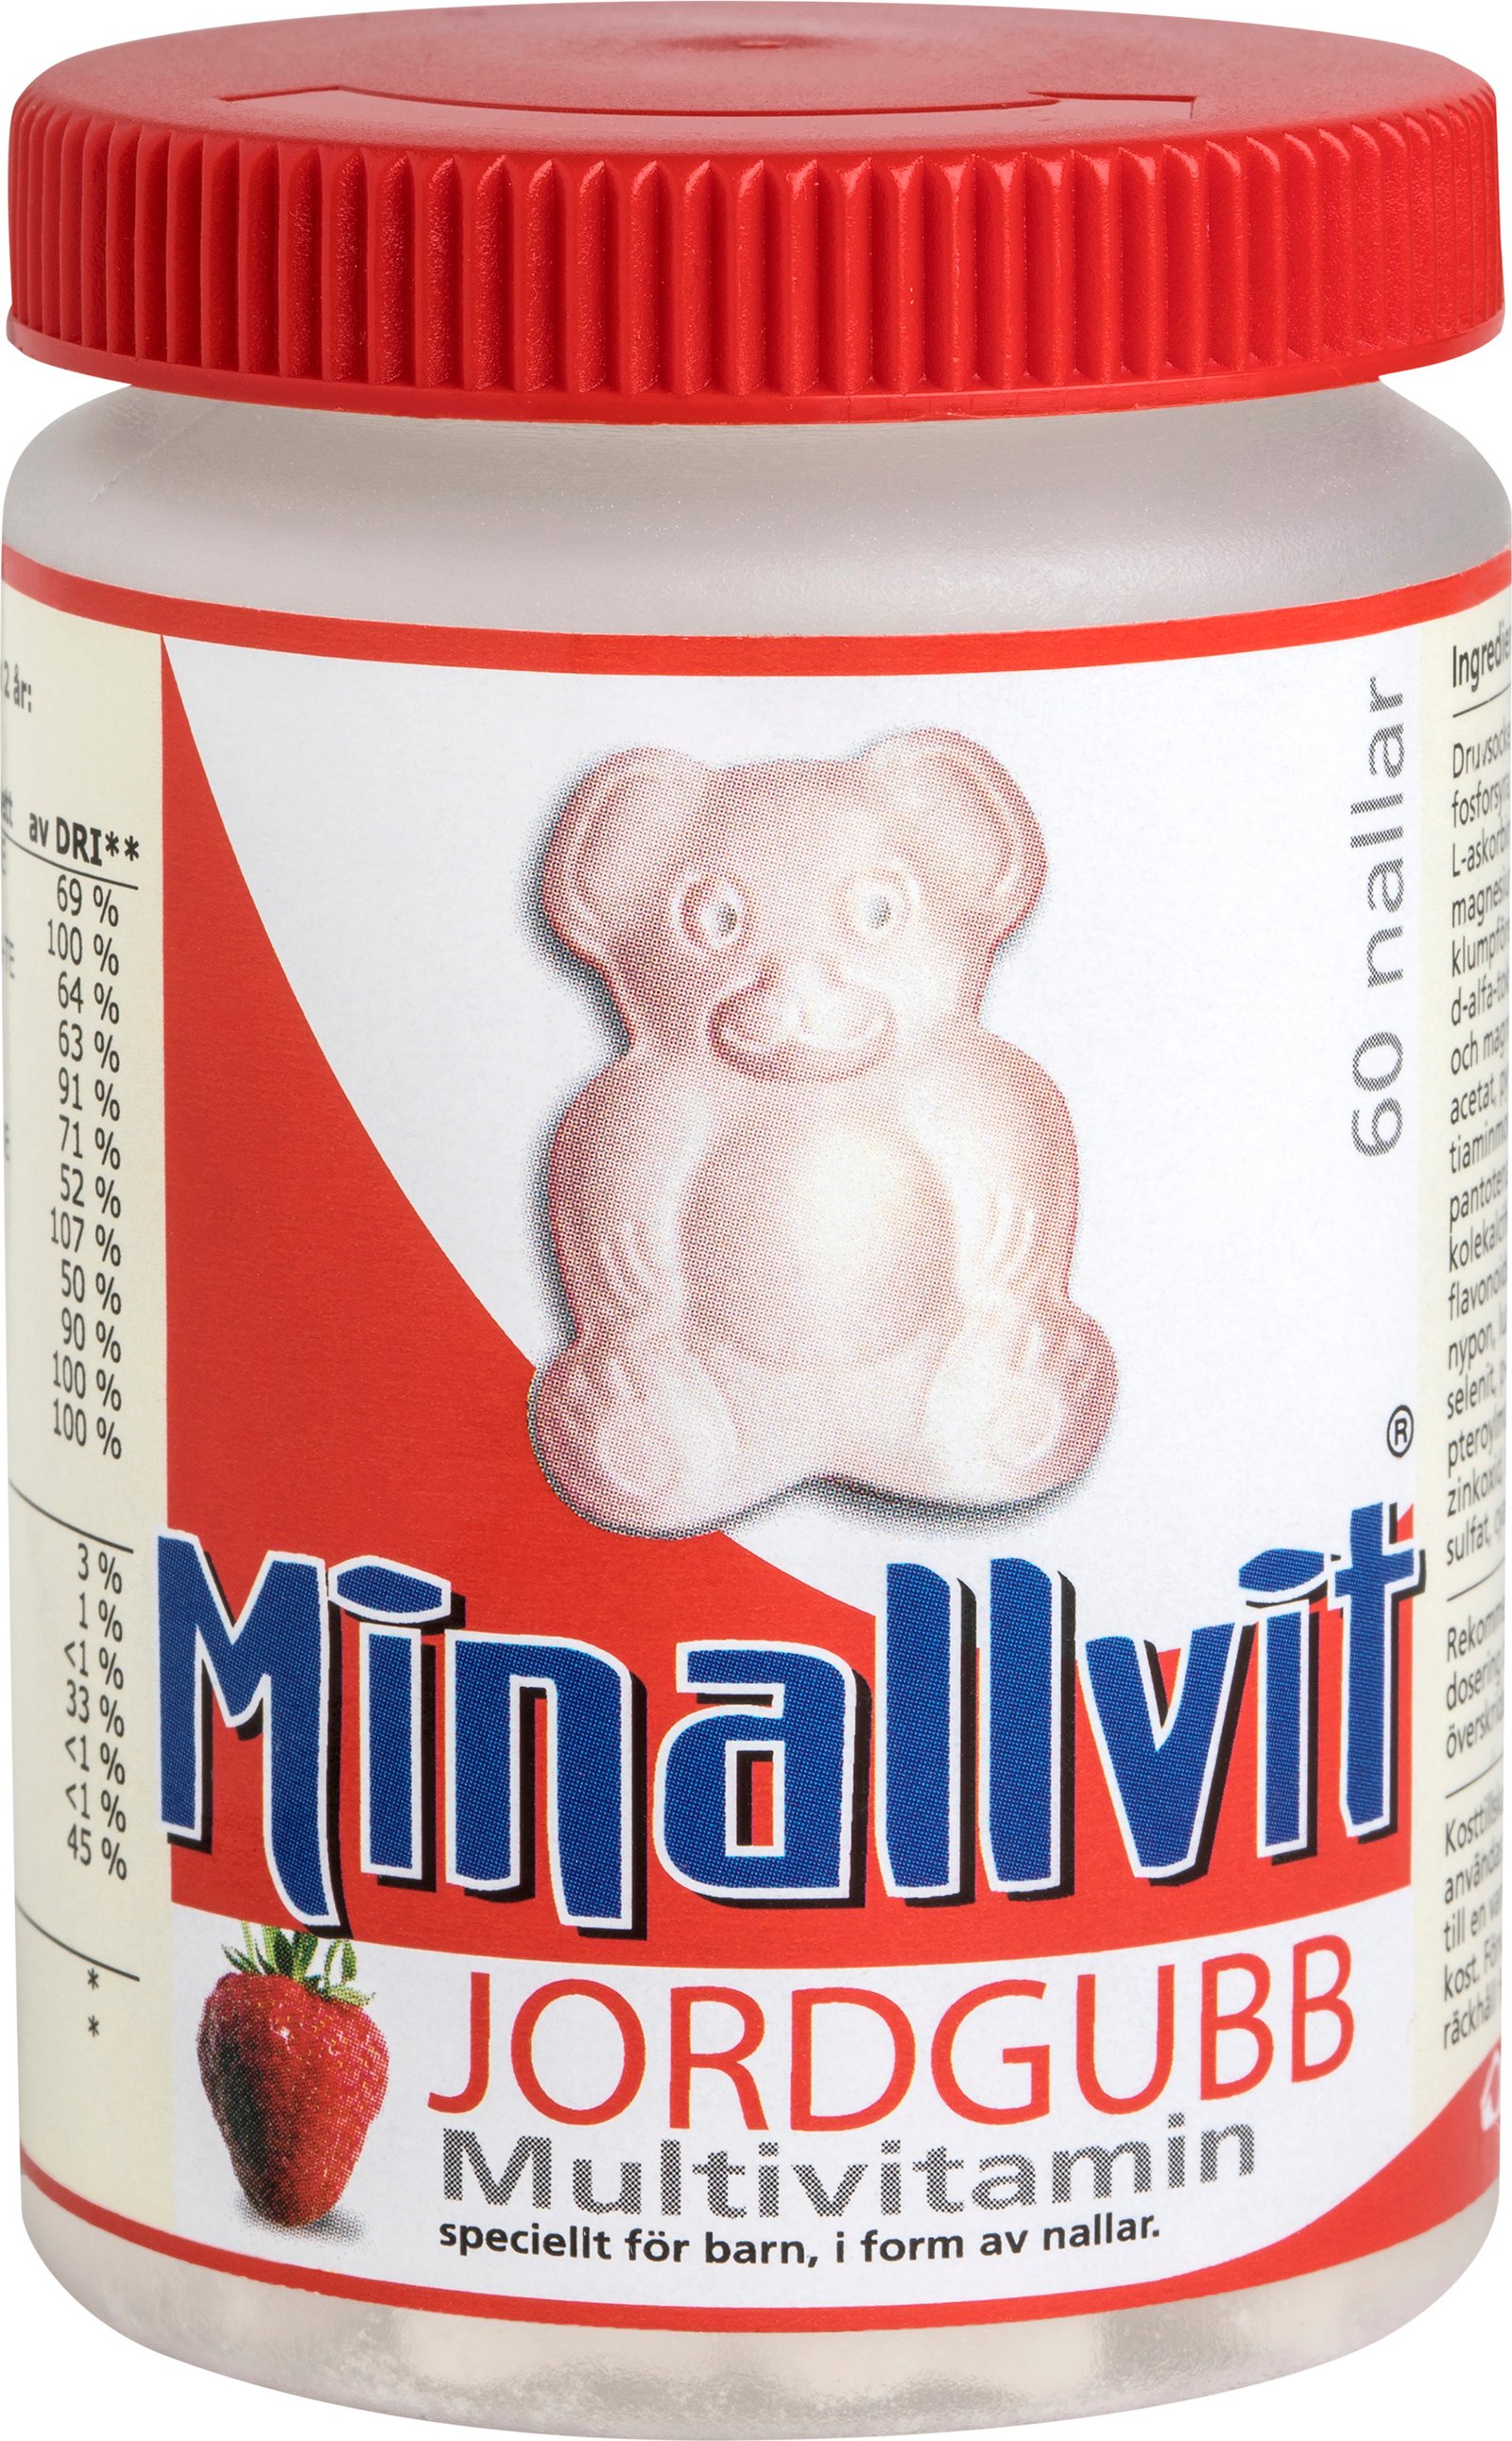 Minallvit Jordgubb Multivitamin 60 st